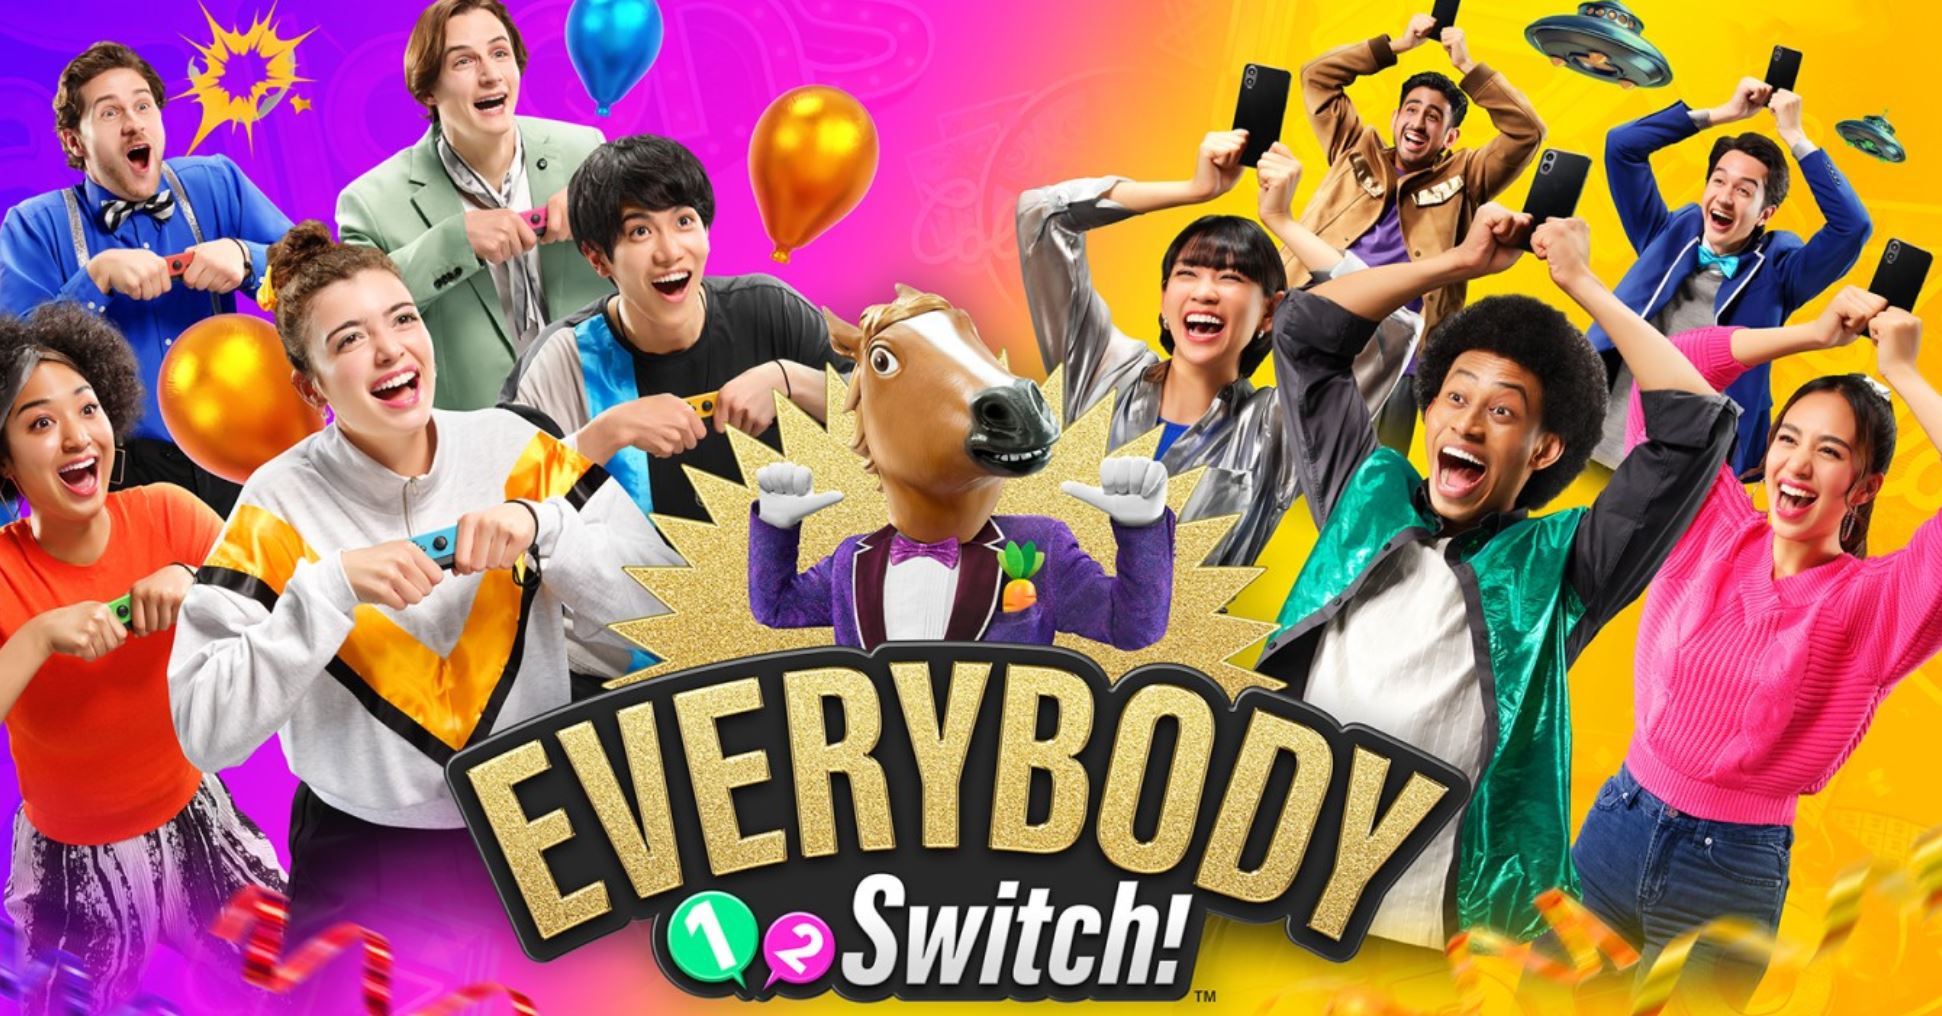 Everybody 1-2-Switch! - nuovi dettagli